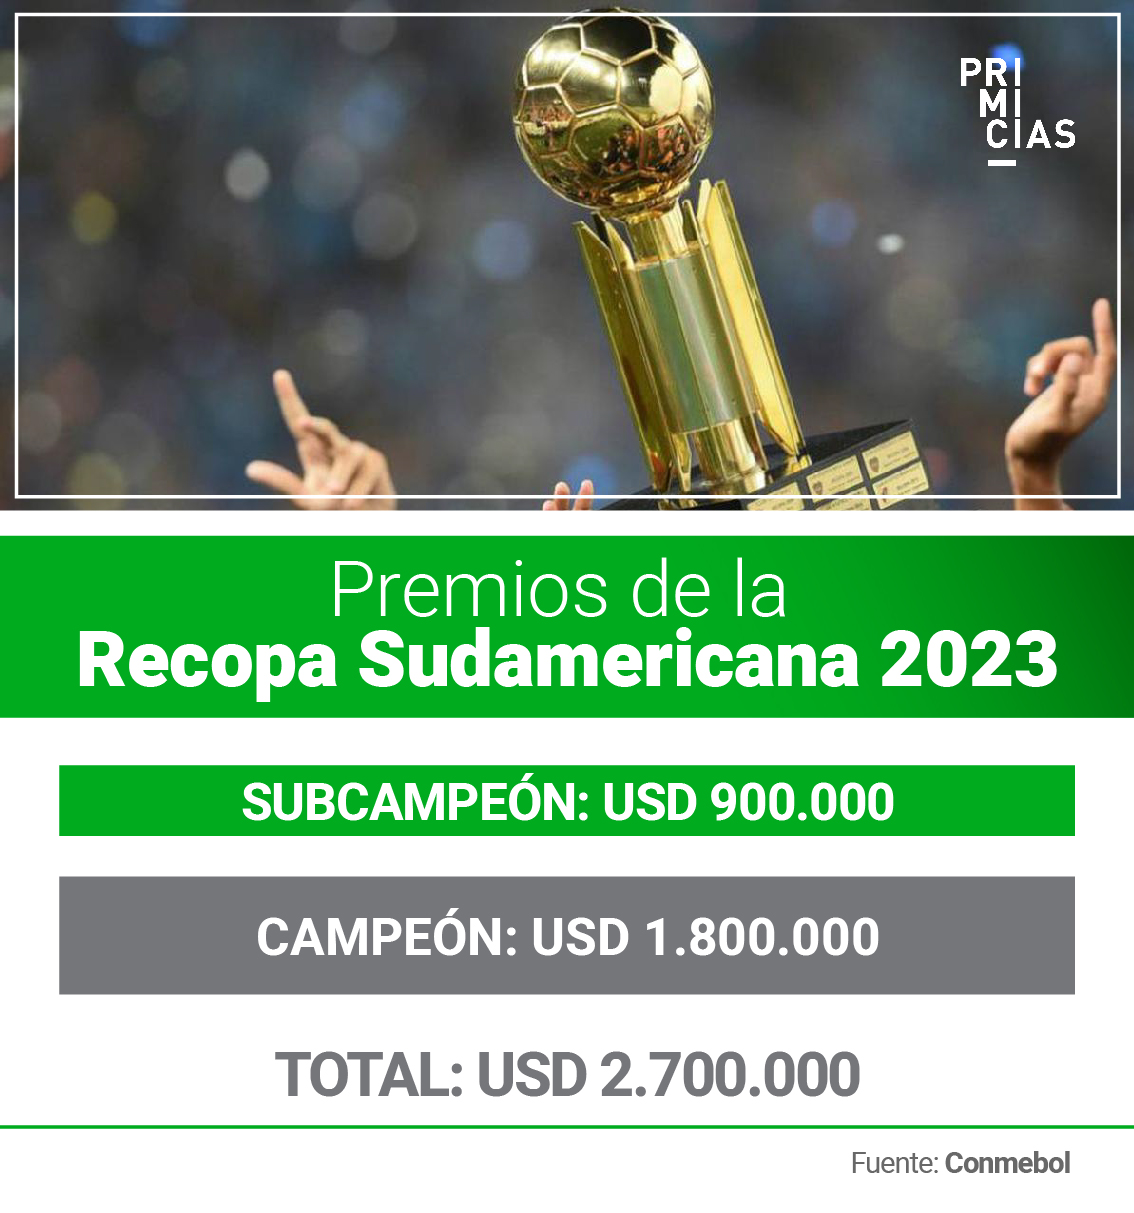 Premios Recopa Sudamericana 2023